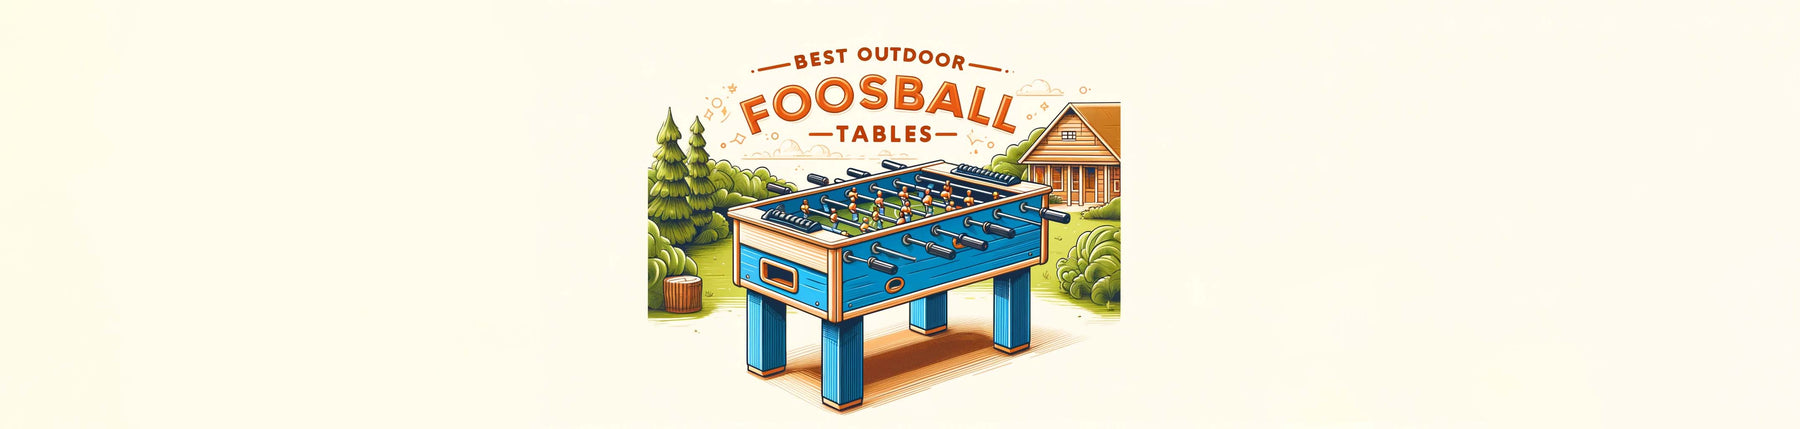 Best Outdoor Foosball Tables Banner